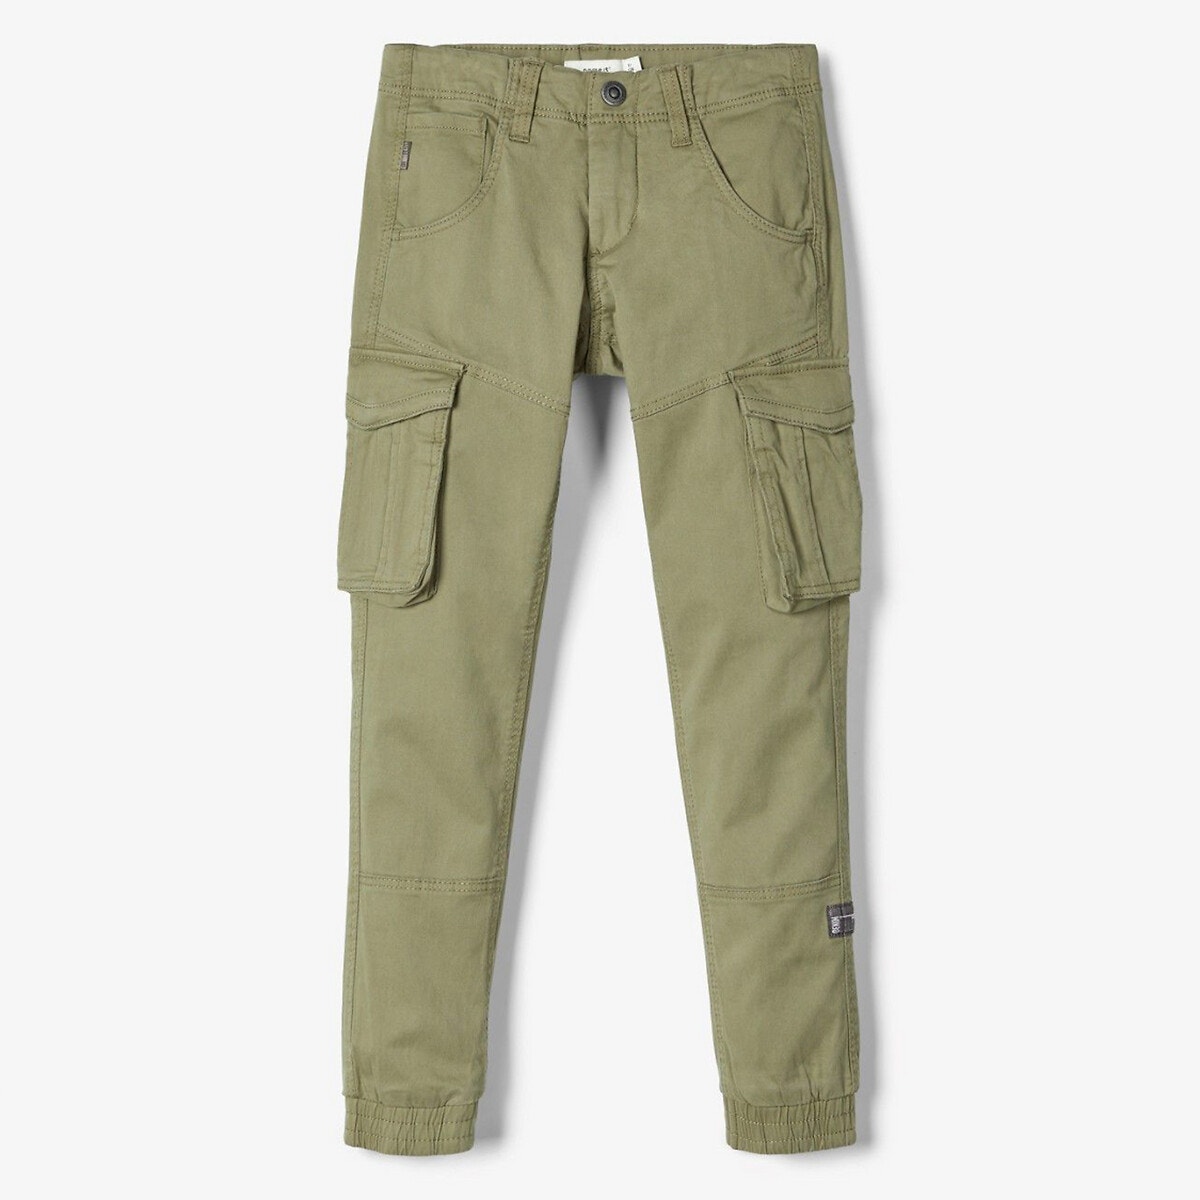 Παντελόνι με μεγάλες τσέπες, 6-14 ετών ΠΑΙΔΙ | Παντελόνια